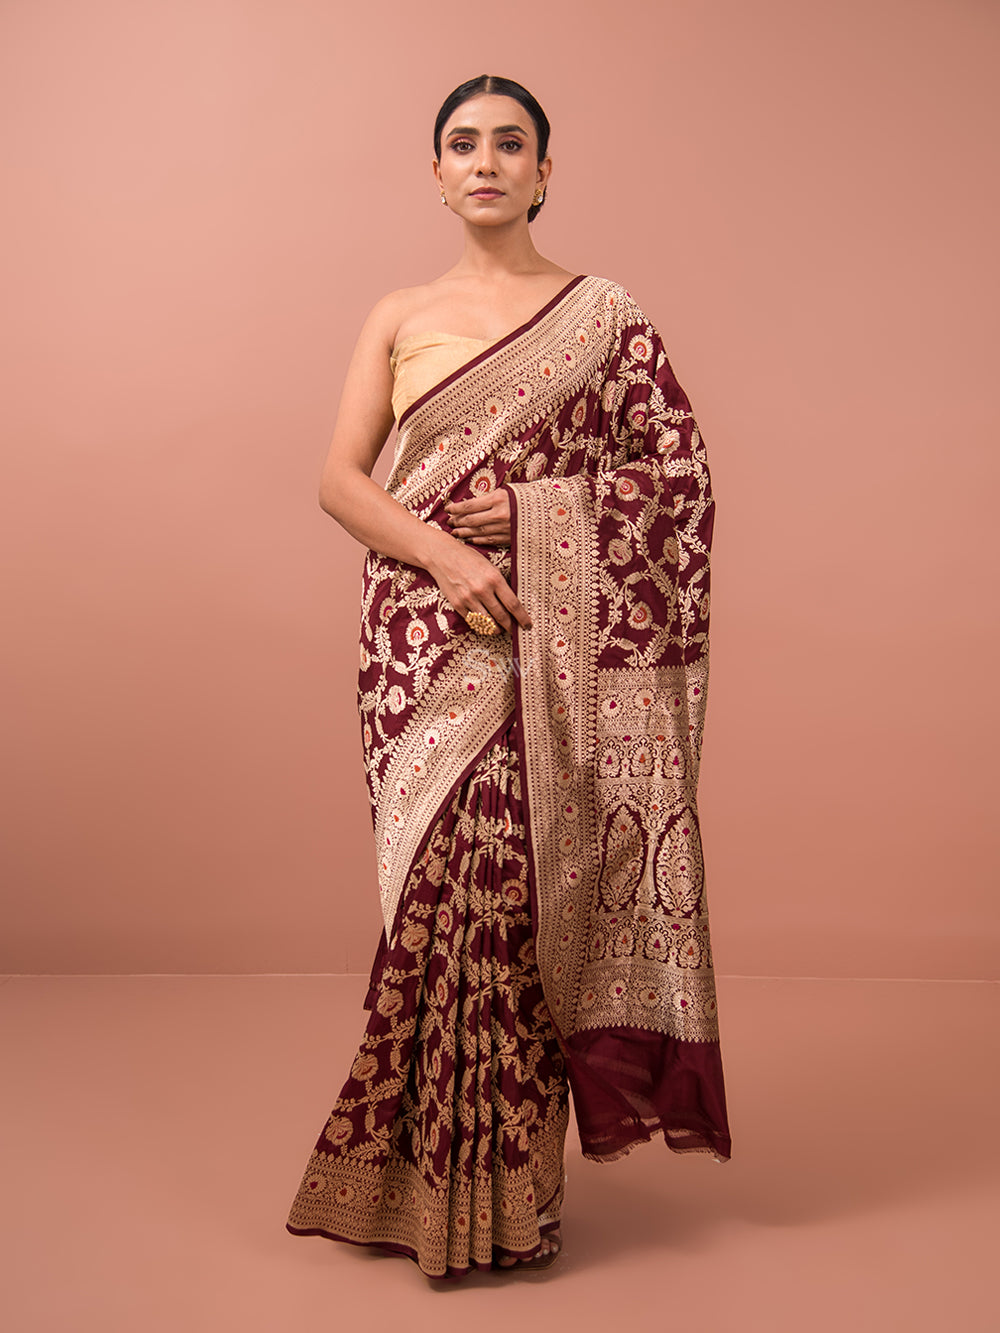 How to wear a Banarasi Saree for Wedding in 2023 - Bridal Banarasi saree  look pro tip - Sacred Weaves